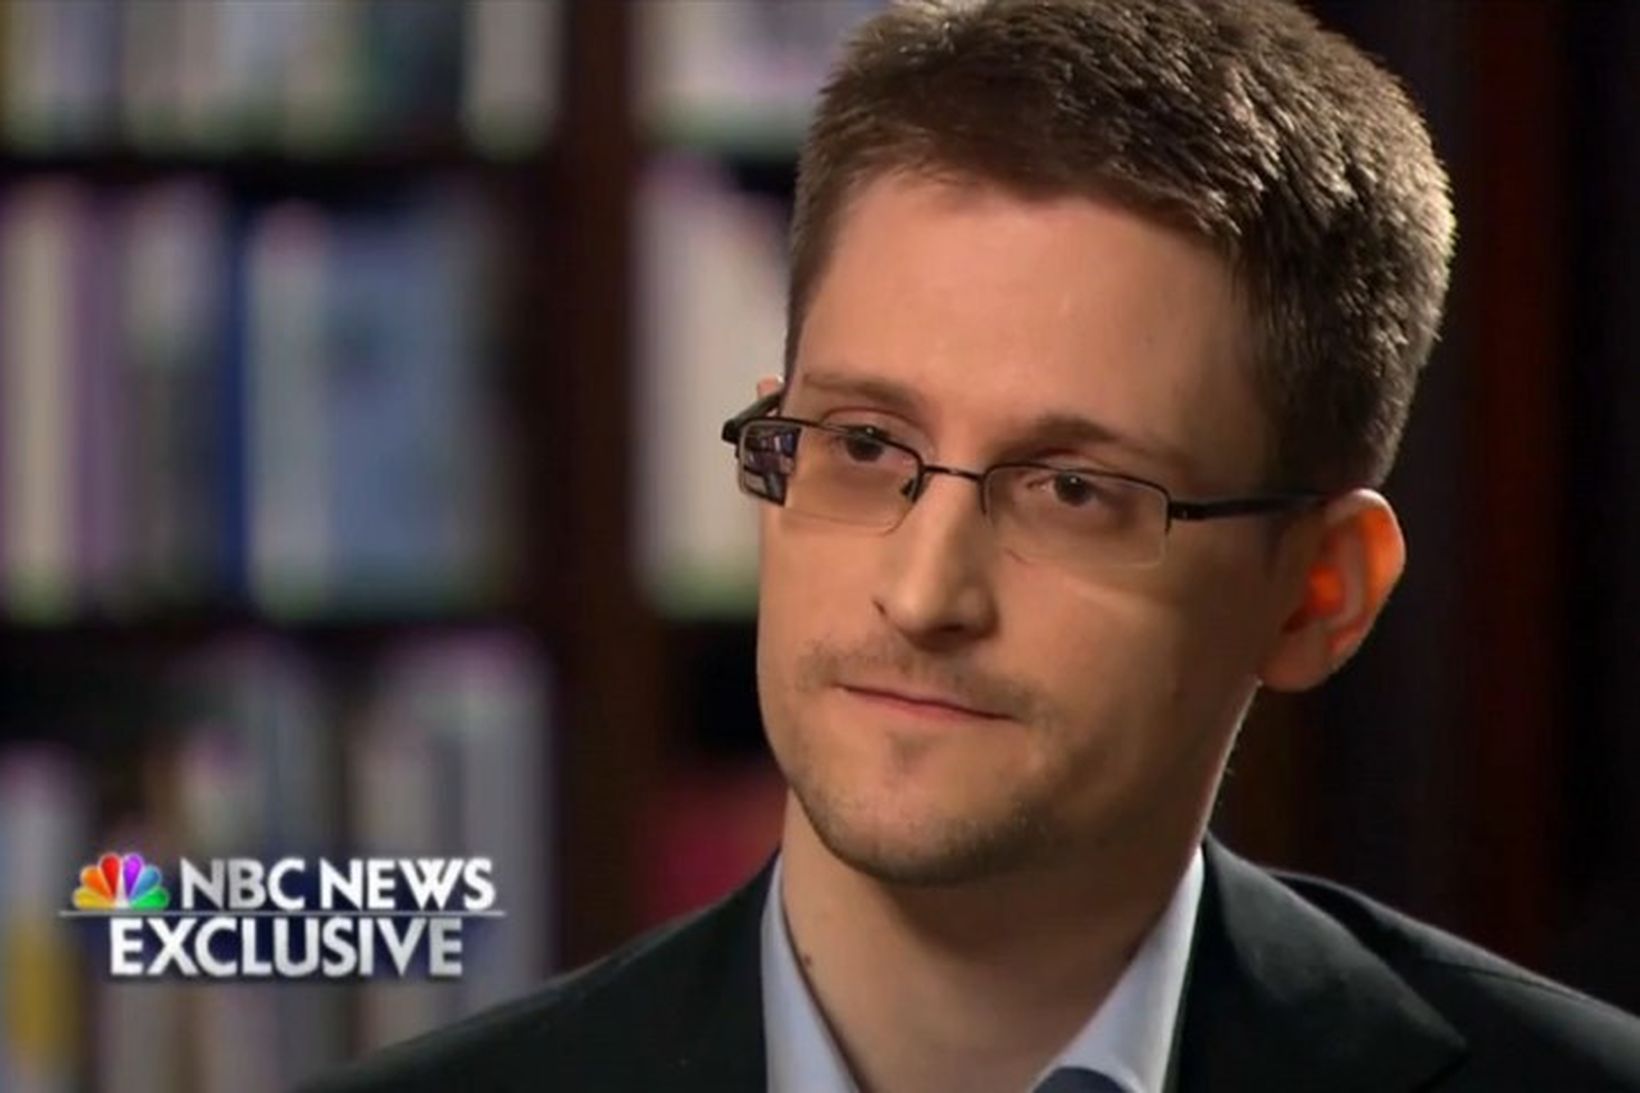 Bandaríski uppljóstrarinn Edward Snowden.